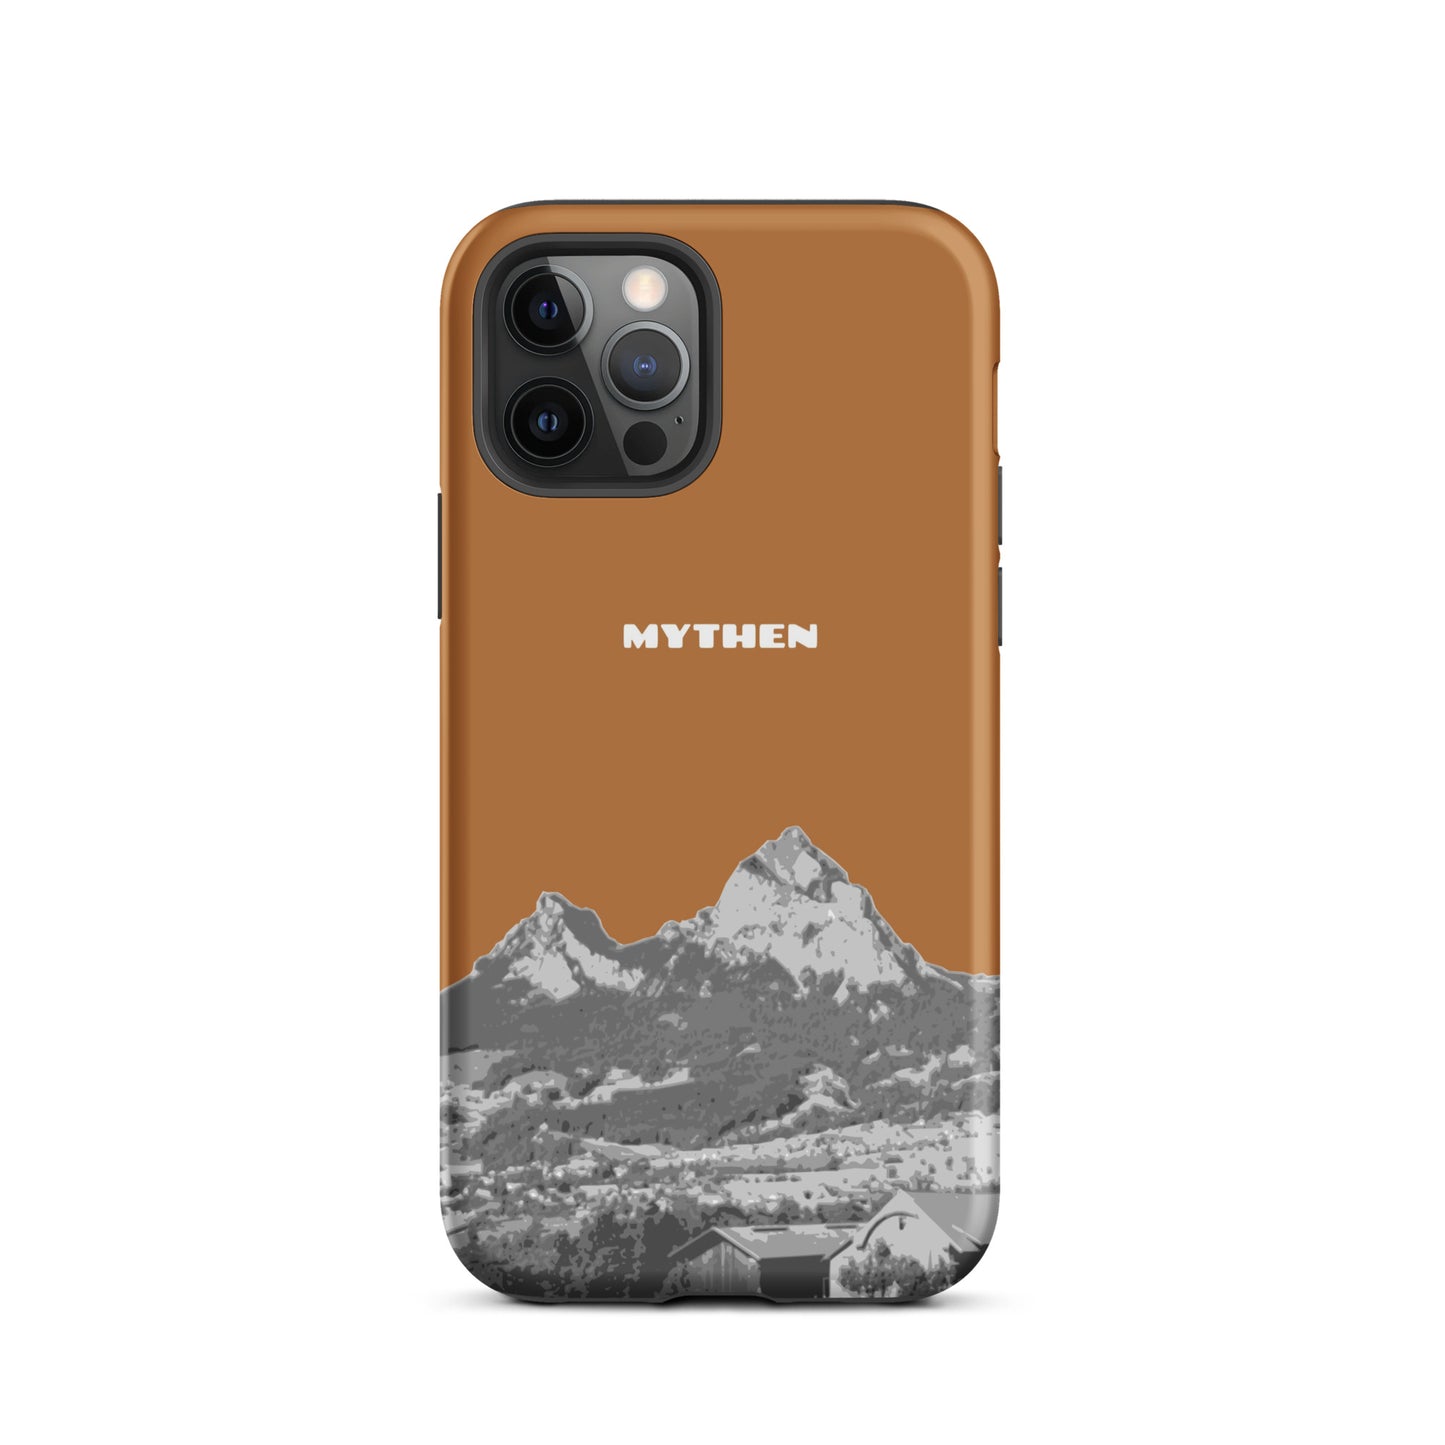 Hülle für das iPhone 12 Pro von Apple in der Farbe Kupfer, dass den Grossen Mythen und den Kleinen Mythen bei Schwyz zeigt. 